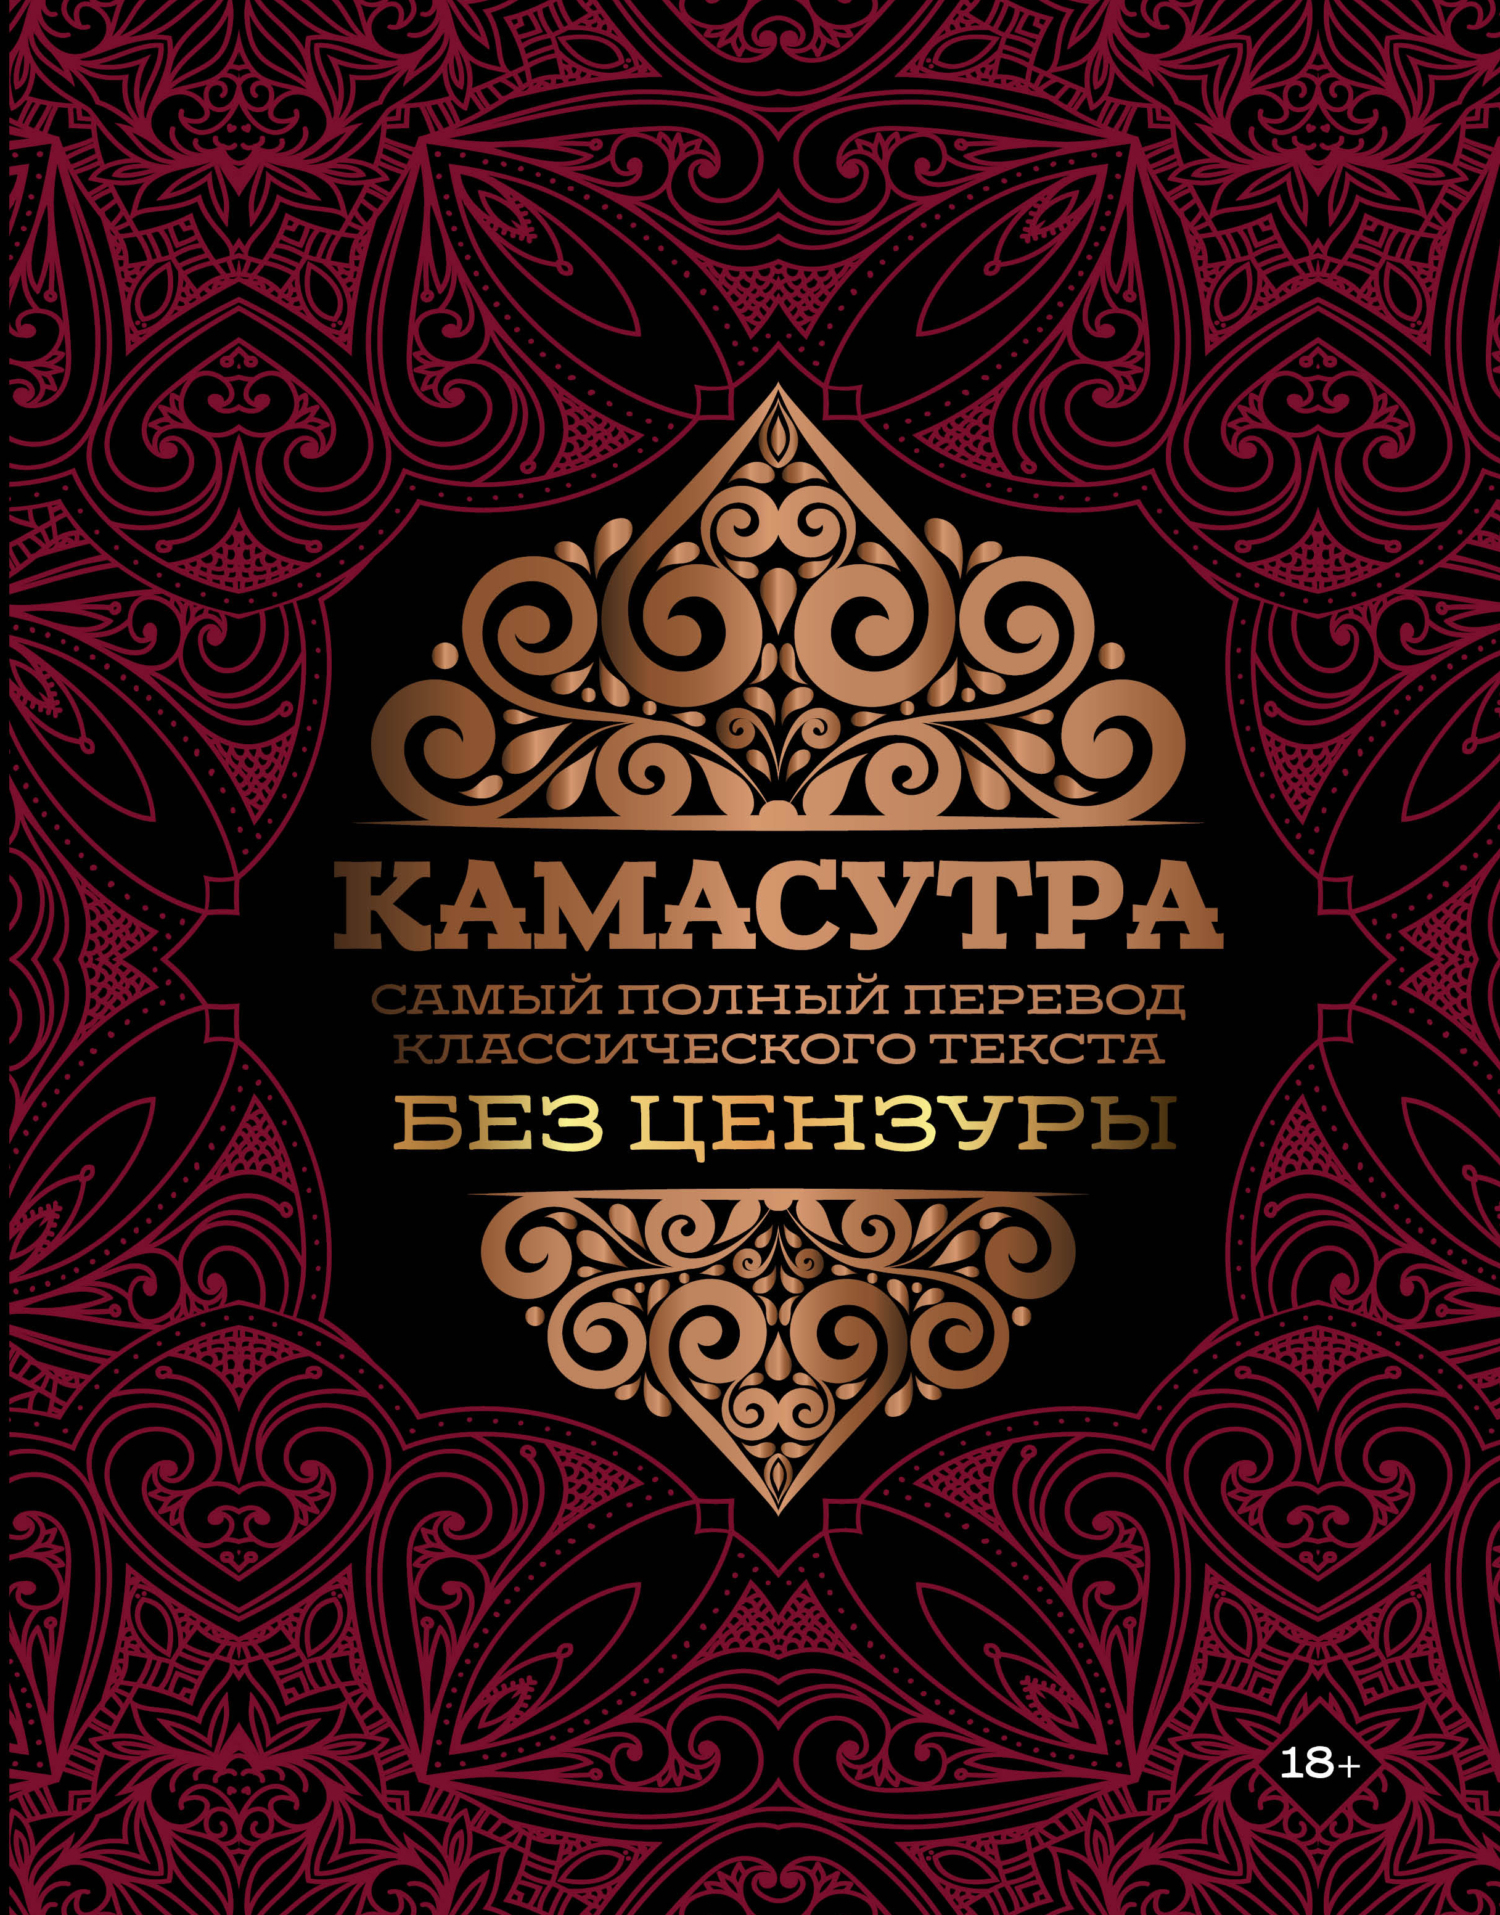 Камасутра. Самый полный перевод классического текста без цензуры, Ватсьяяна  Малланага – скачать книгу fb2, epub, pdf на ЛитРес